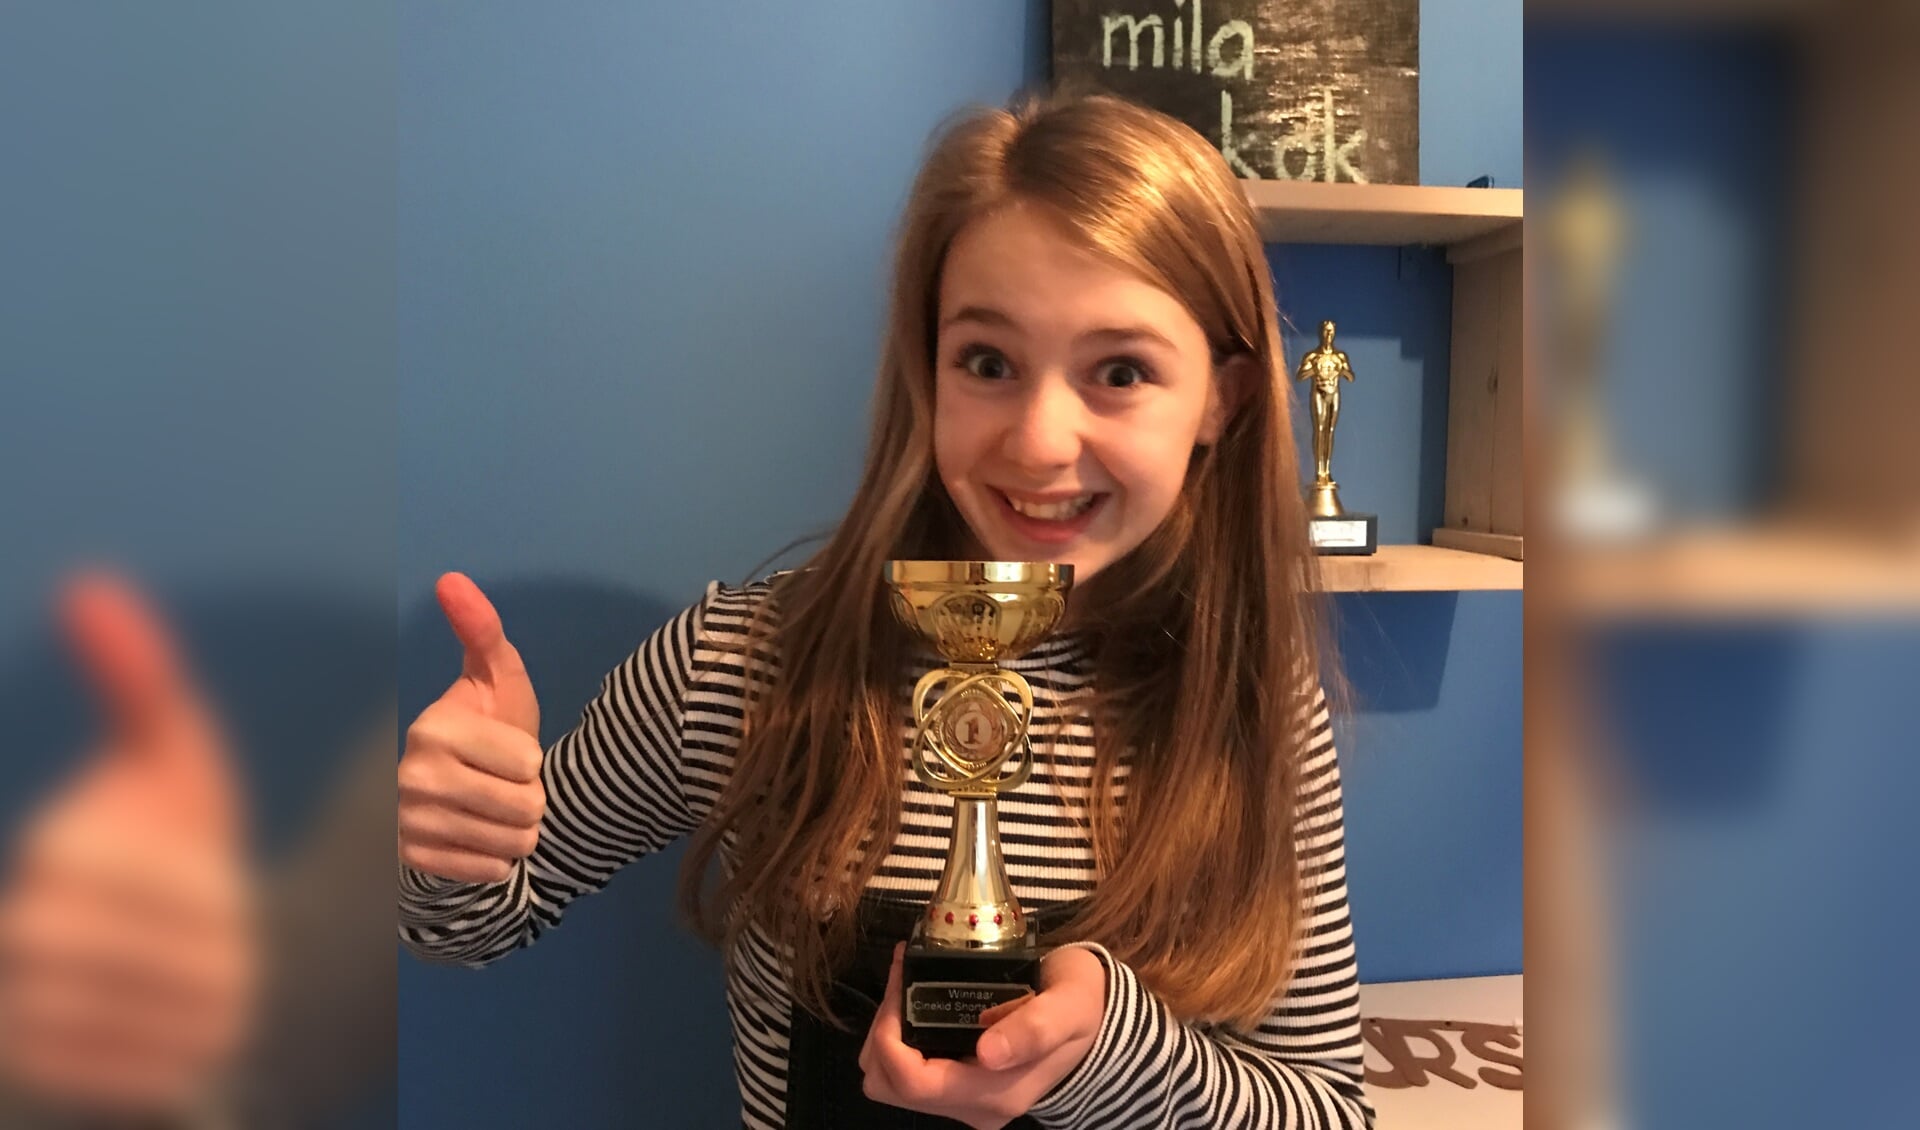 De 11-jarige Mila Kok uit Zutphen is de trotse winnaar geworden van het Cinekid filmfestival shorts. Foto: PR